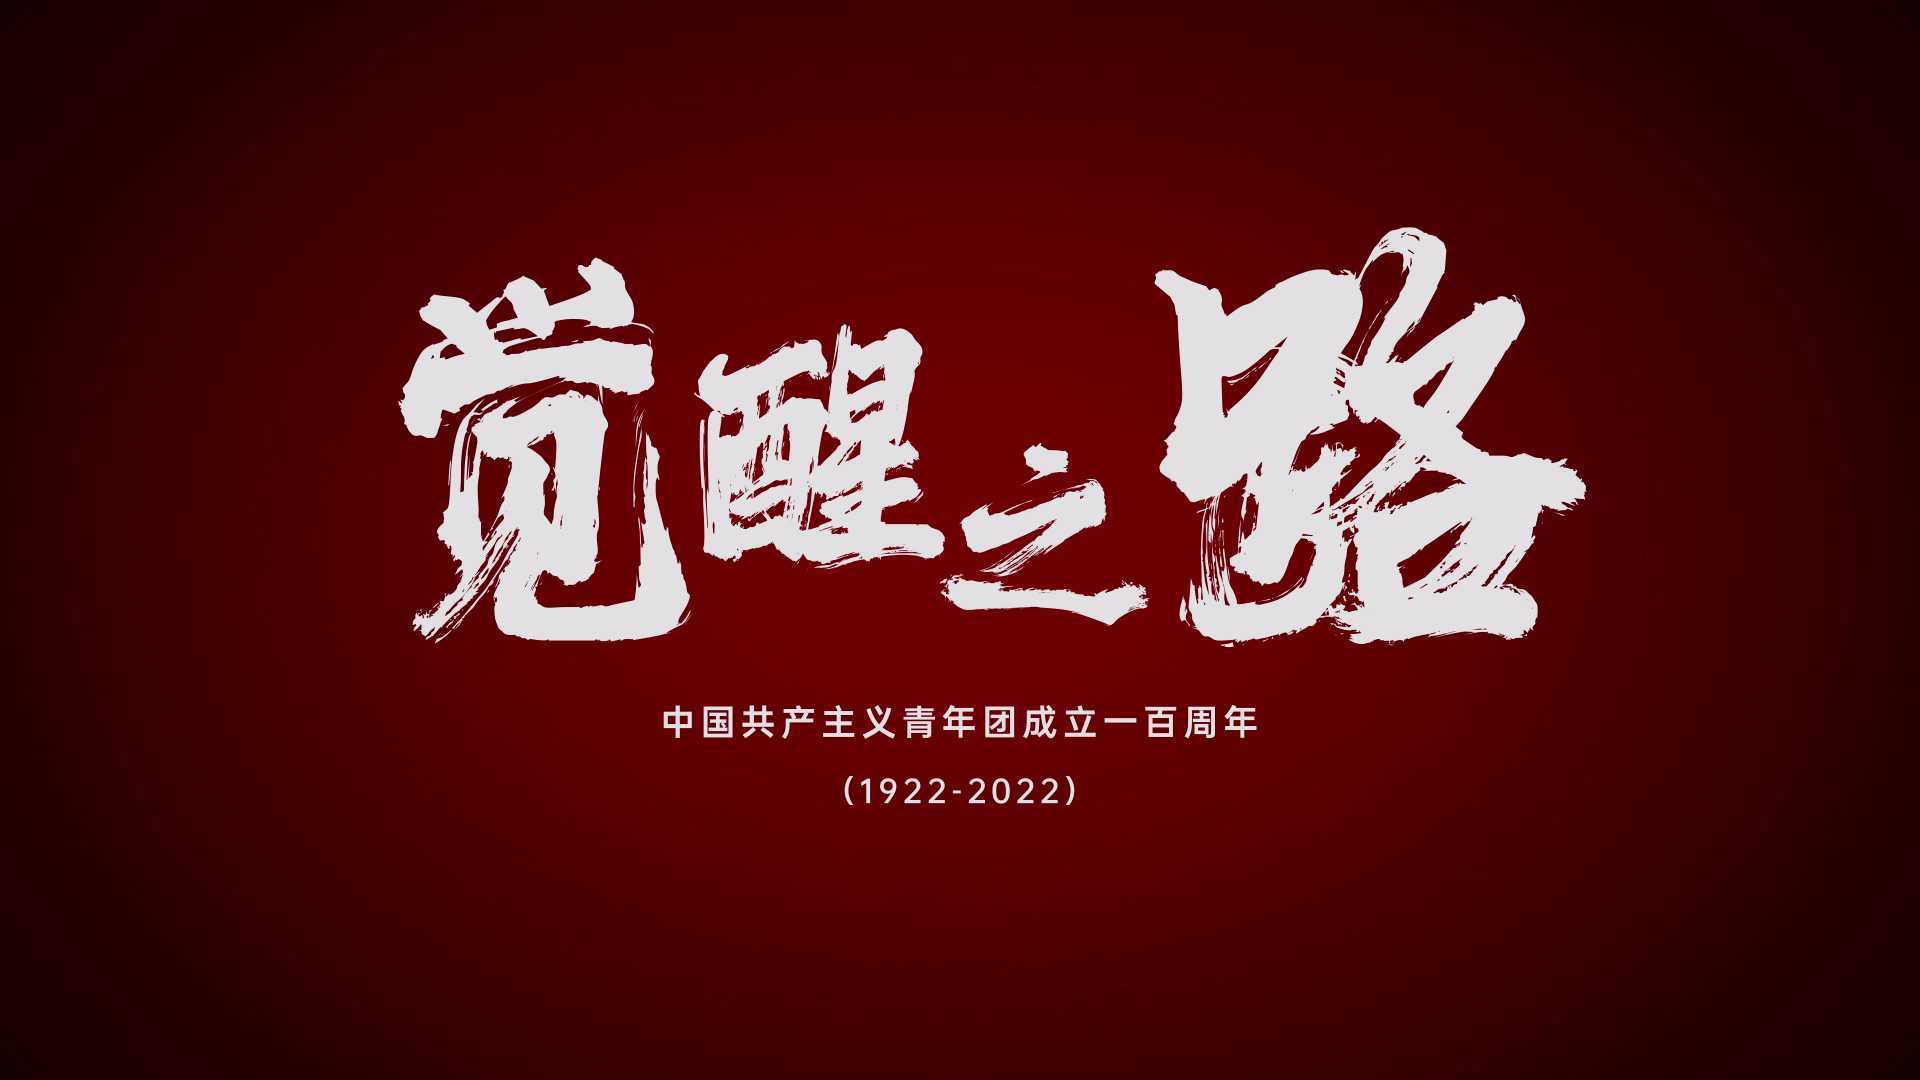 中国共产主义青年团成立一百周年《觉醒之路》微视频--剪辑版